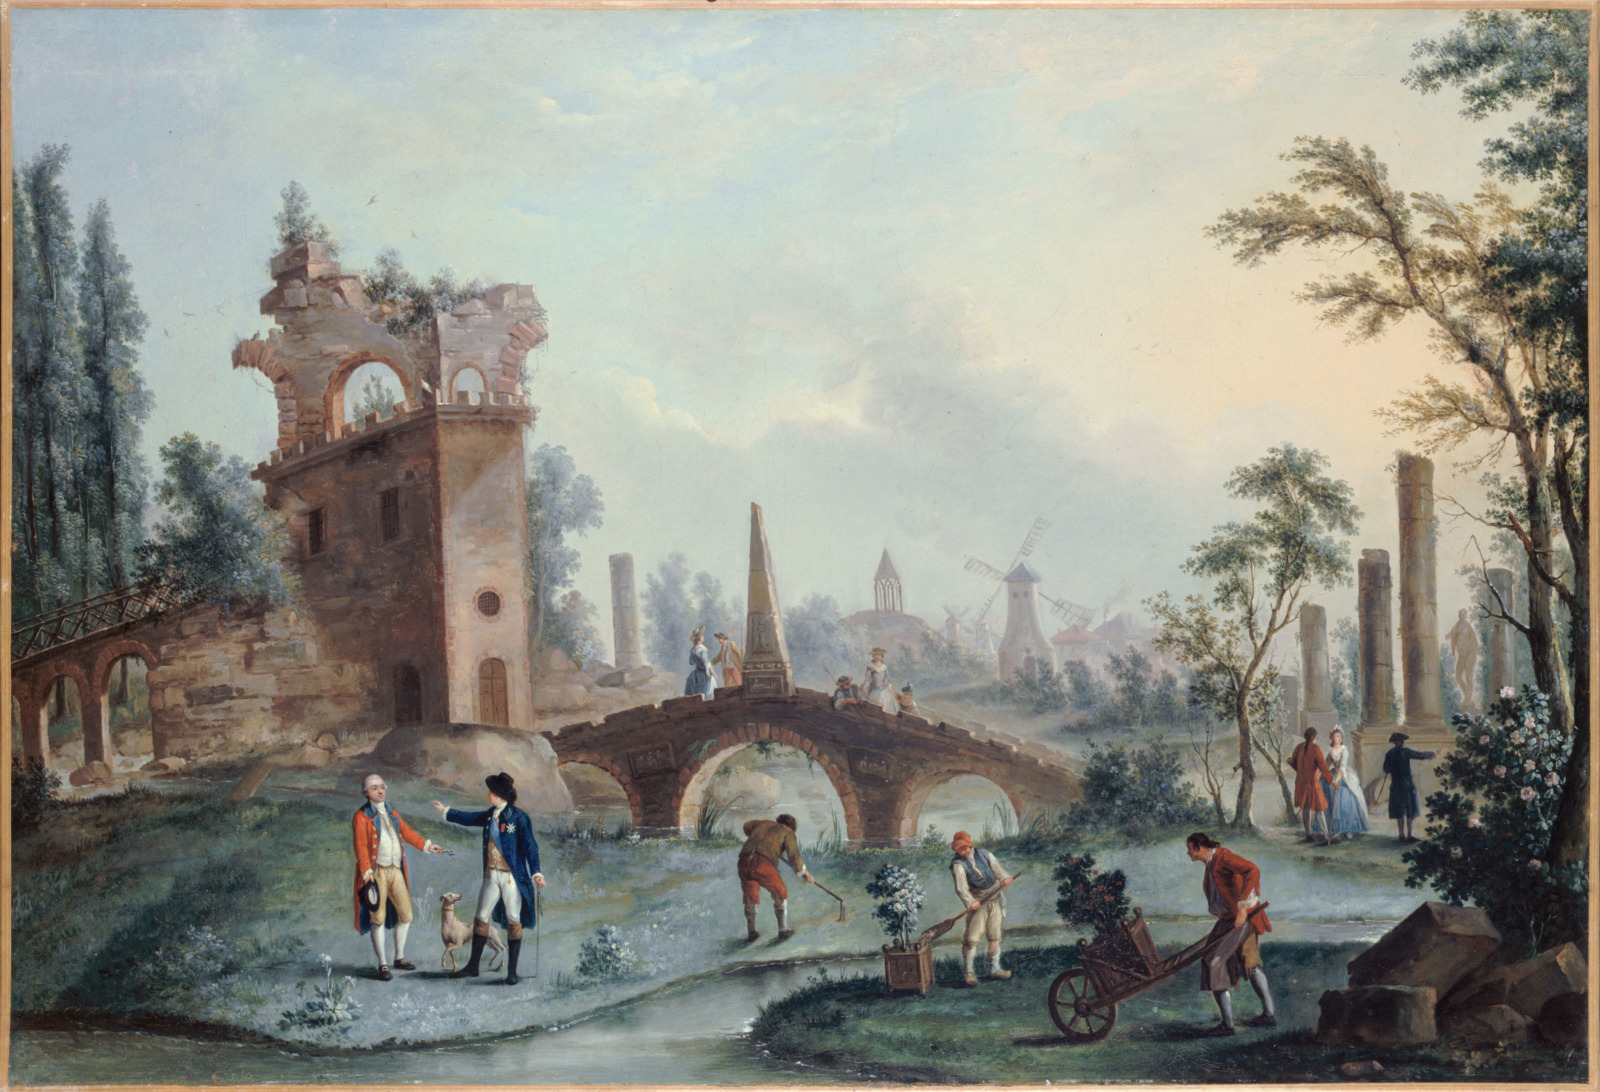 Vue des jardins de Monceau by Carmontelle (18th century)